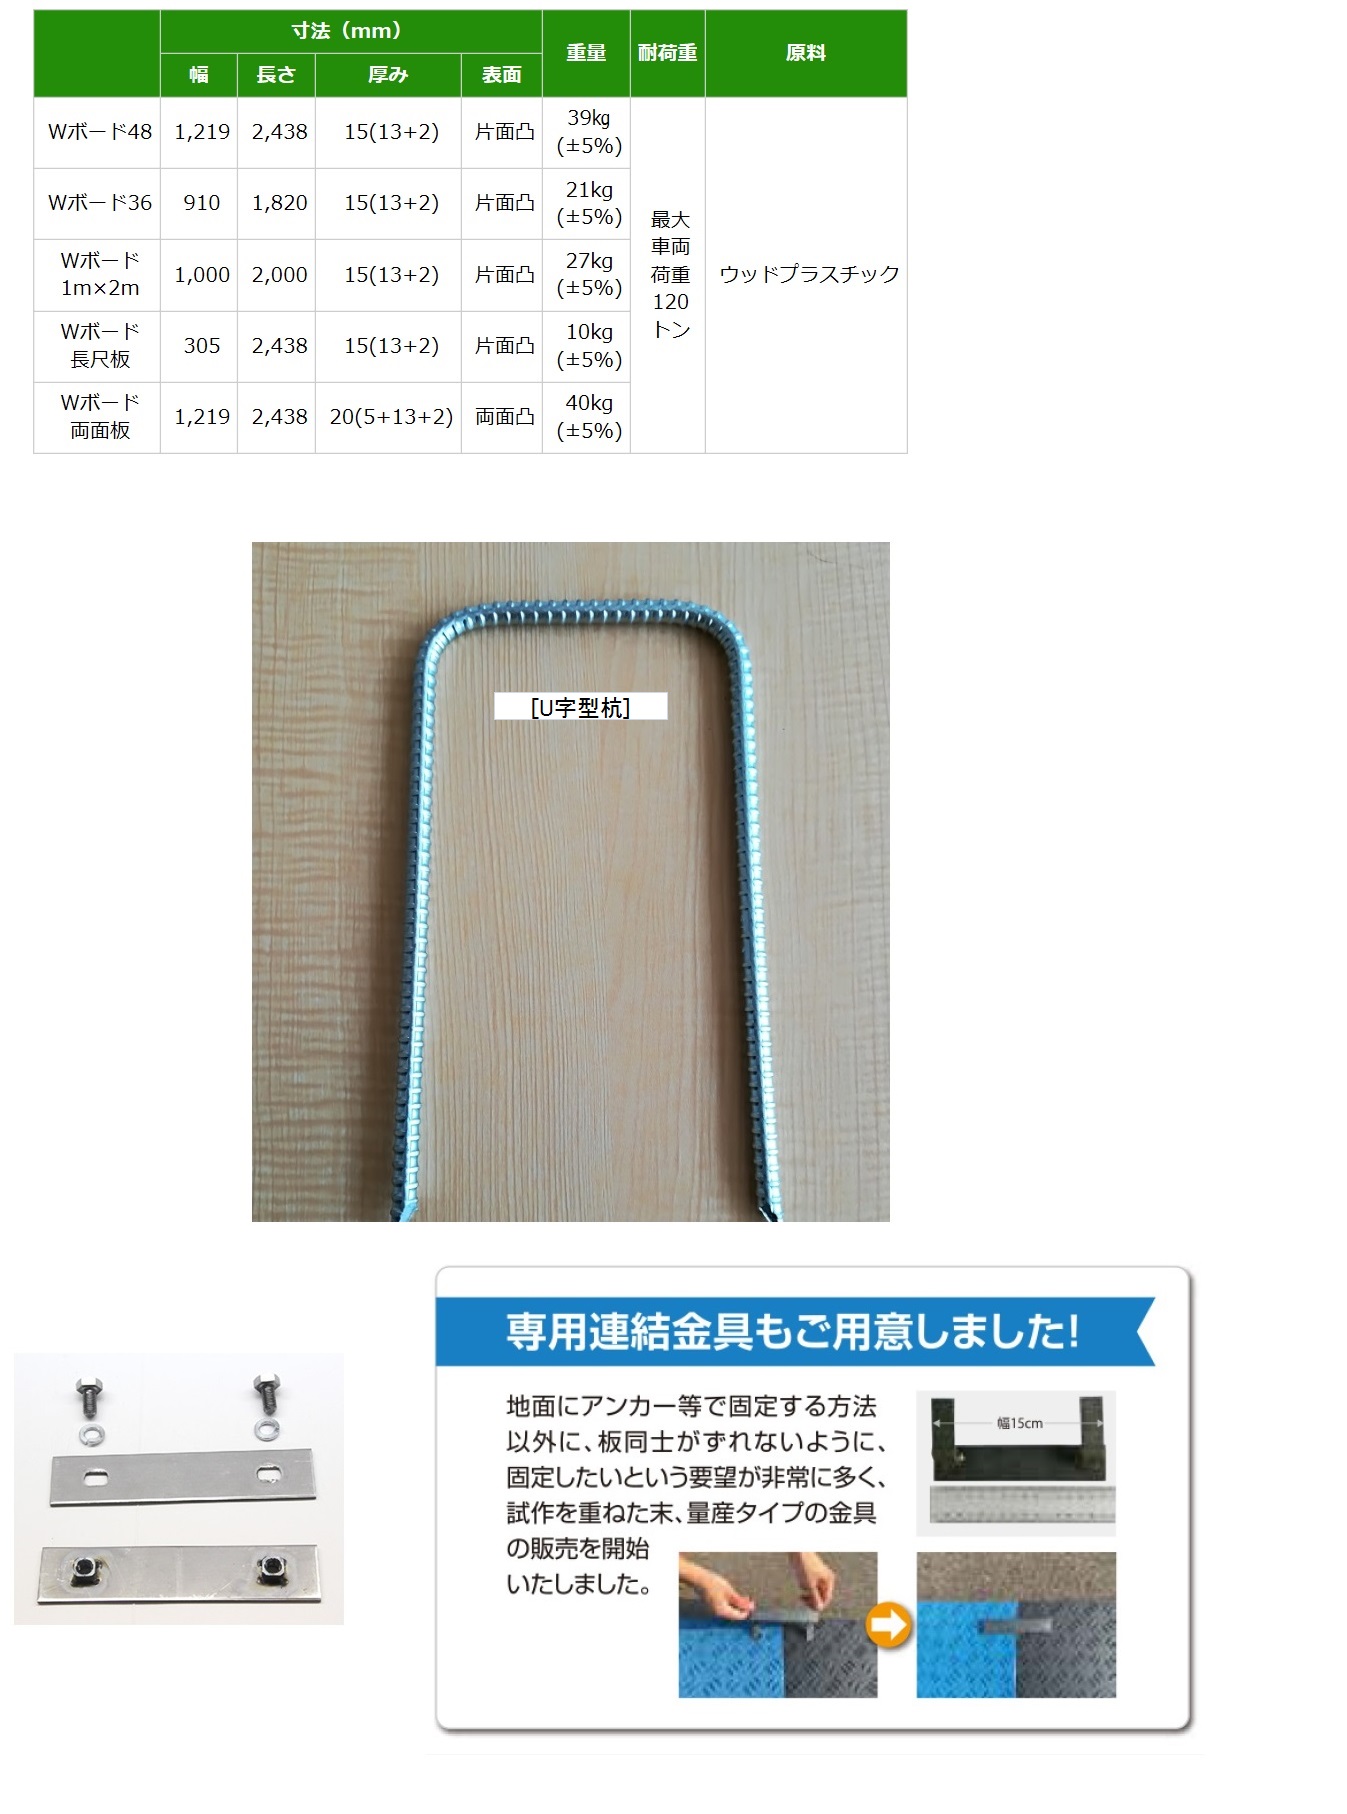 ウッドプラスチックテクノロジー 樹脂製養生敷板[Wボード] / 秋本勇吉 